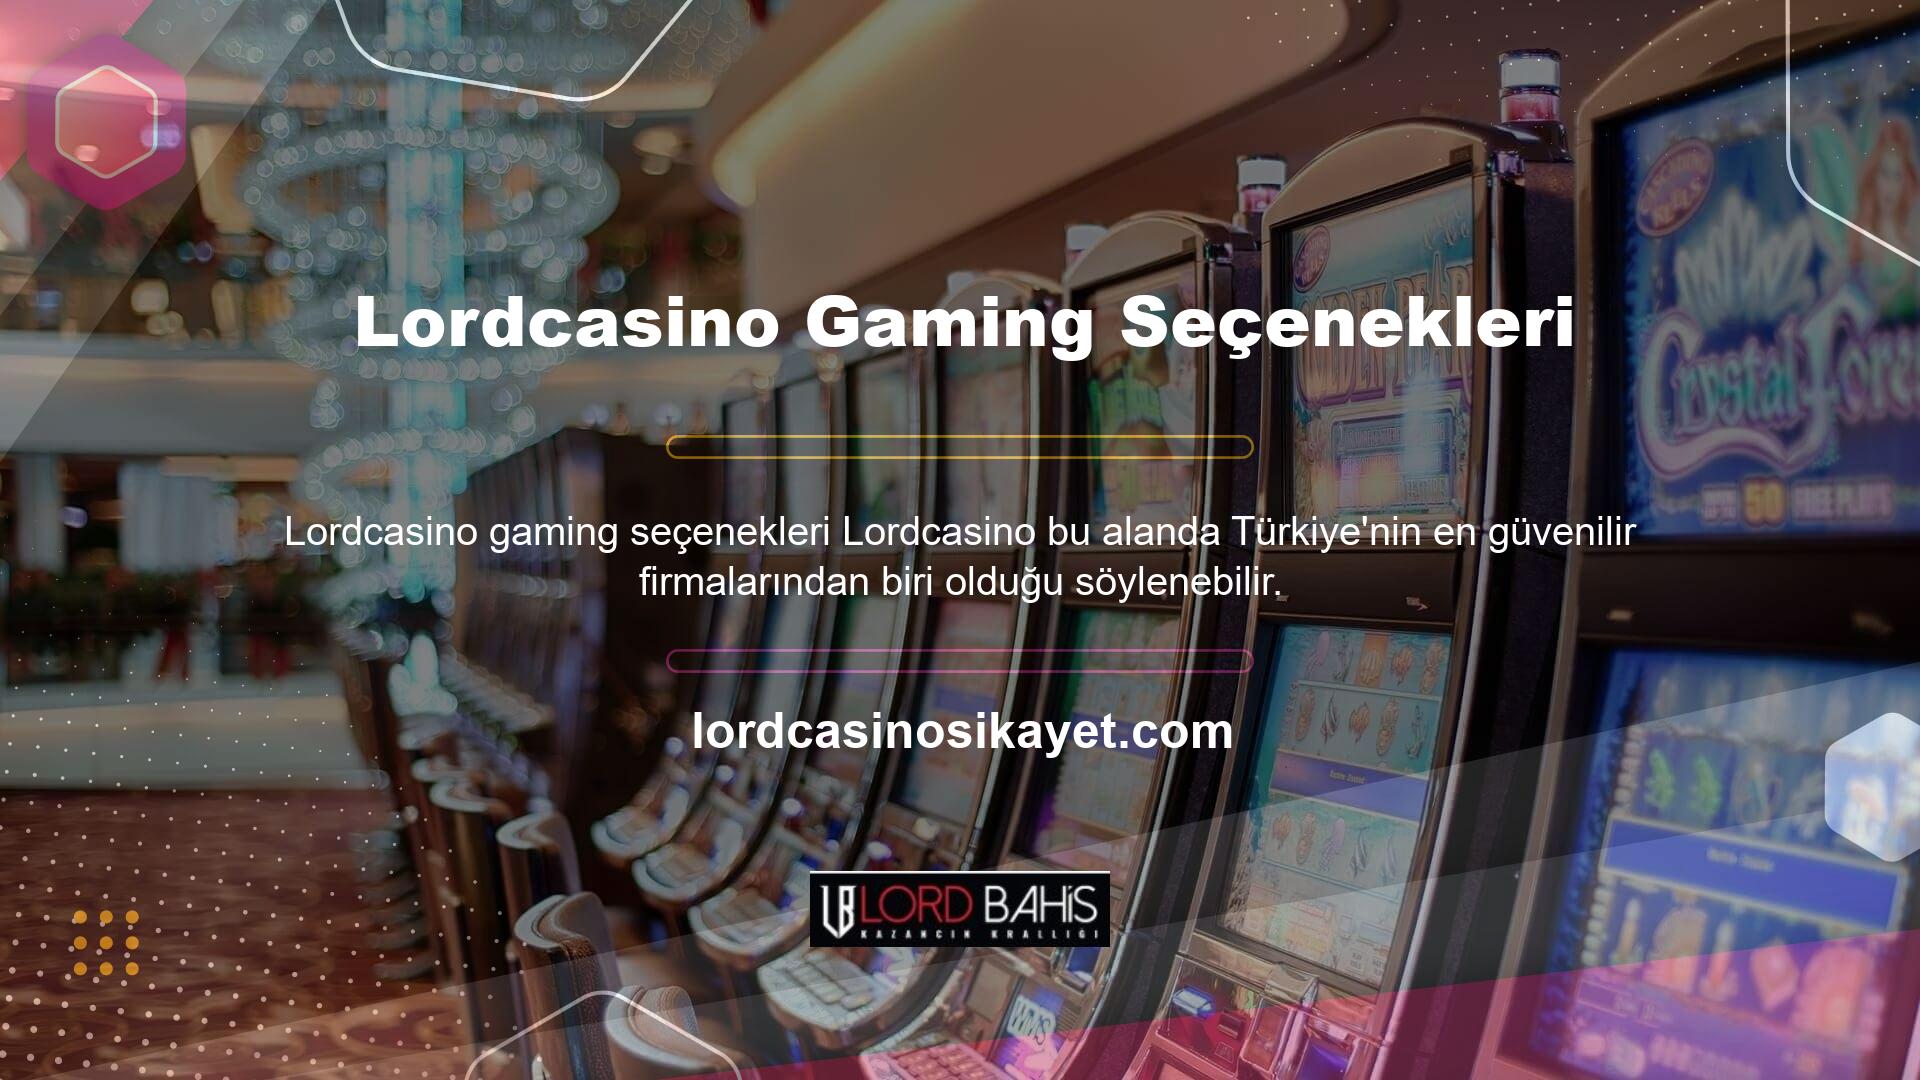 Lordcasino Oyun Seçenekleri Canlı Bahis Sitesi, canlı bahis, sanal bahis, casino, canlı casino oyunları, Okey ve Tavla gibi seçenekleri sunarak Türk bahisçilerine çok yönlü bir oyun alanı sunmaktadır